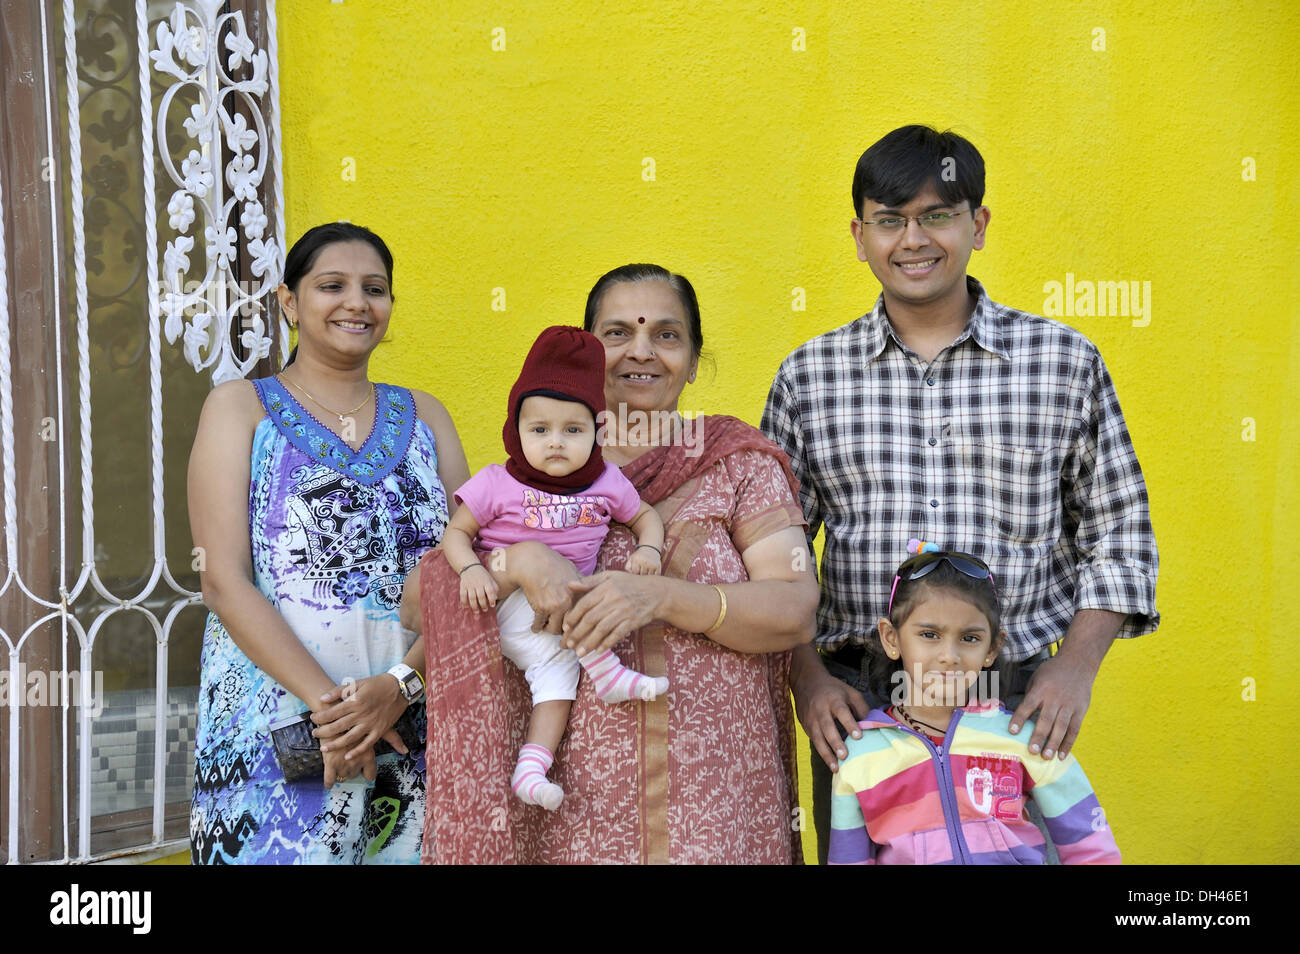 Famiglia indiana di cinque verticale - signor#736j e 736k e 736L e 736la & 364 - 184966 rmm Foto Stock